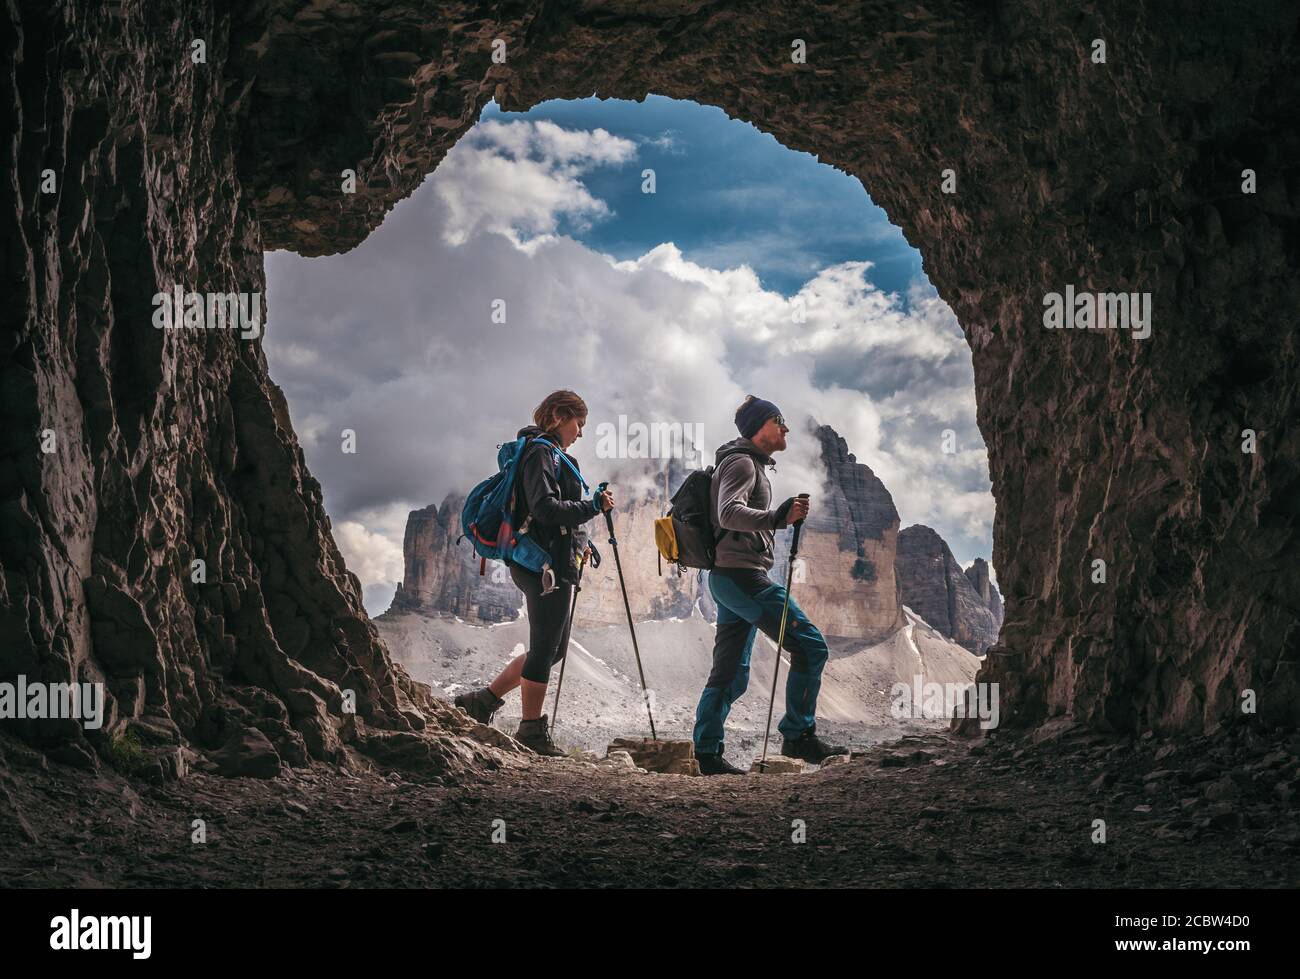 Couple de randonneurs à pied, avec les pics de Tre Cime di Levarado en arrière-plan, vue depuis une fenêtre de grotte, dans les Dolomites, Italie. Banque D'Images